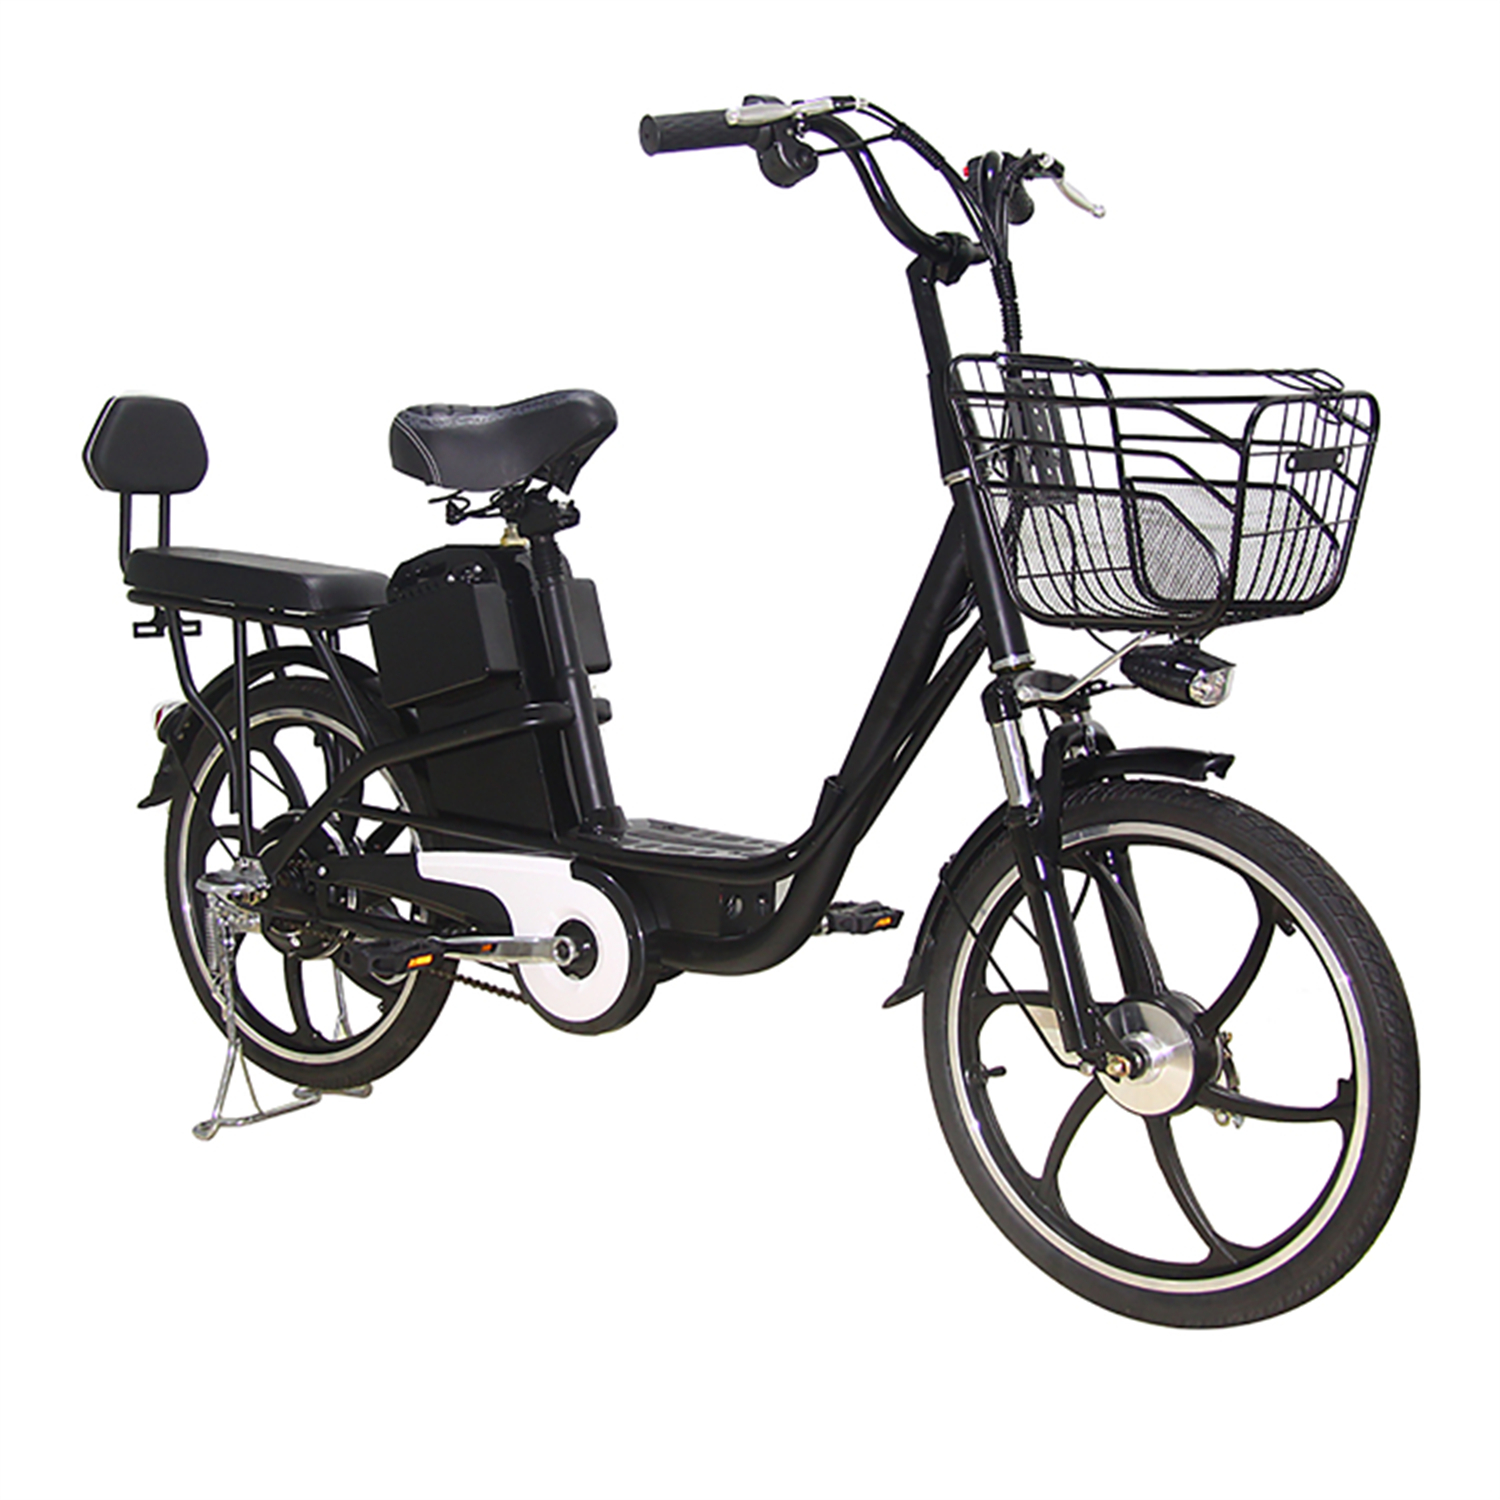 48V ELAND elektrische fiets met 2 wielen voor volwassenen